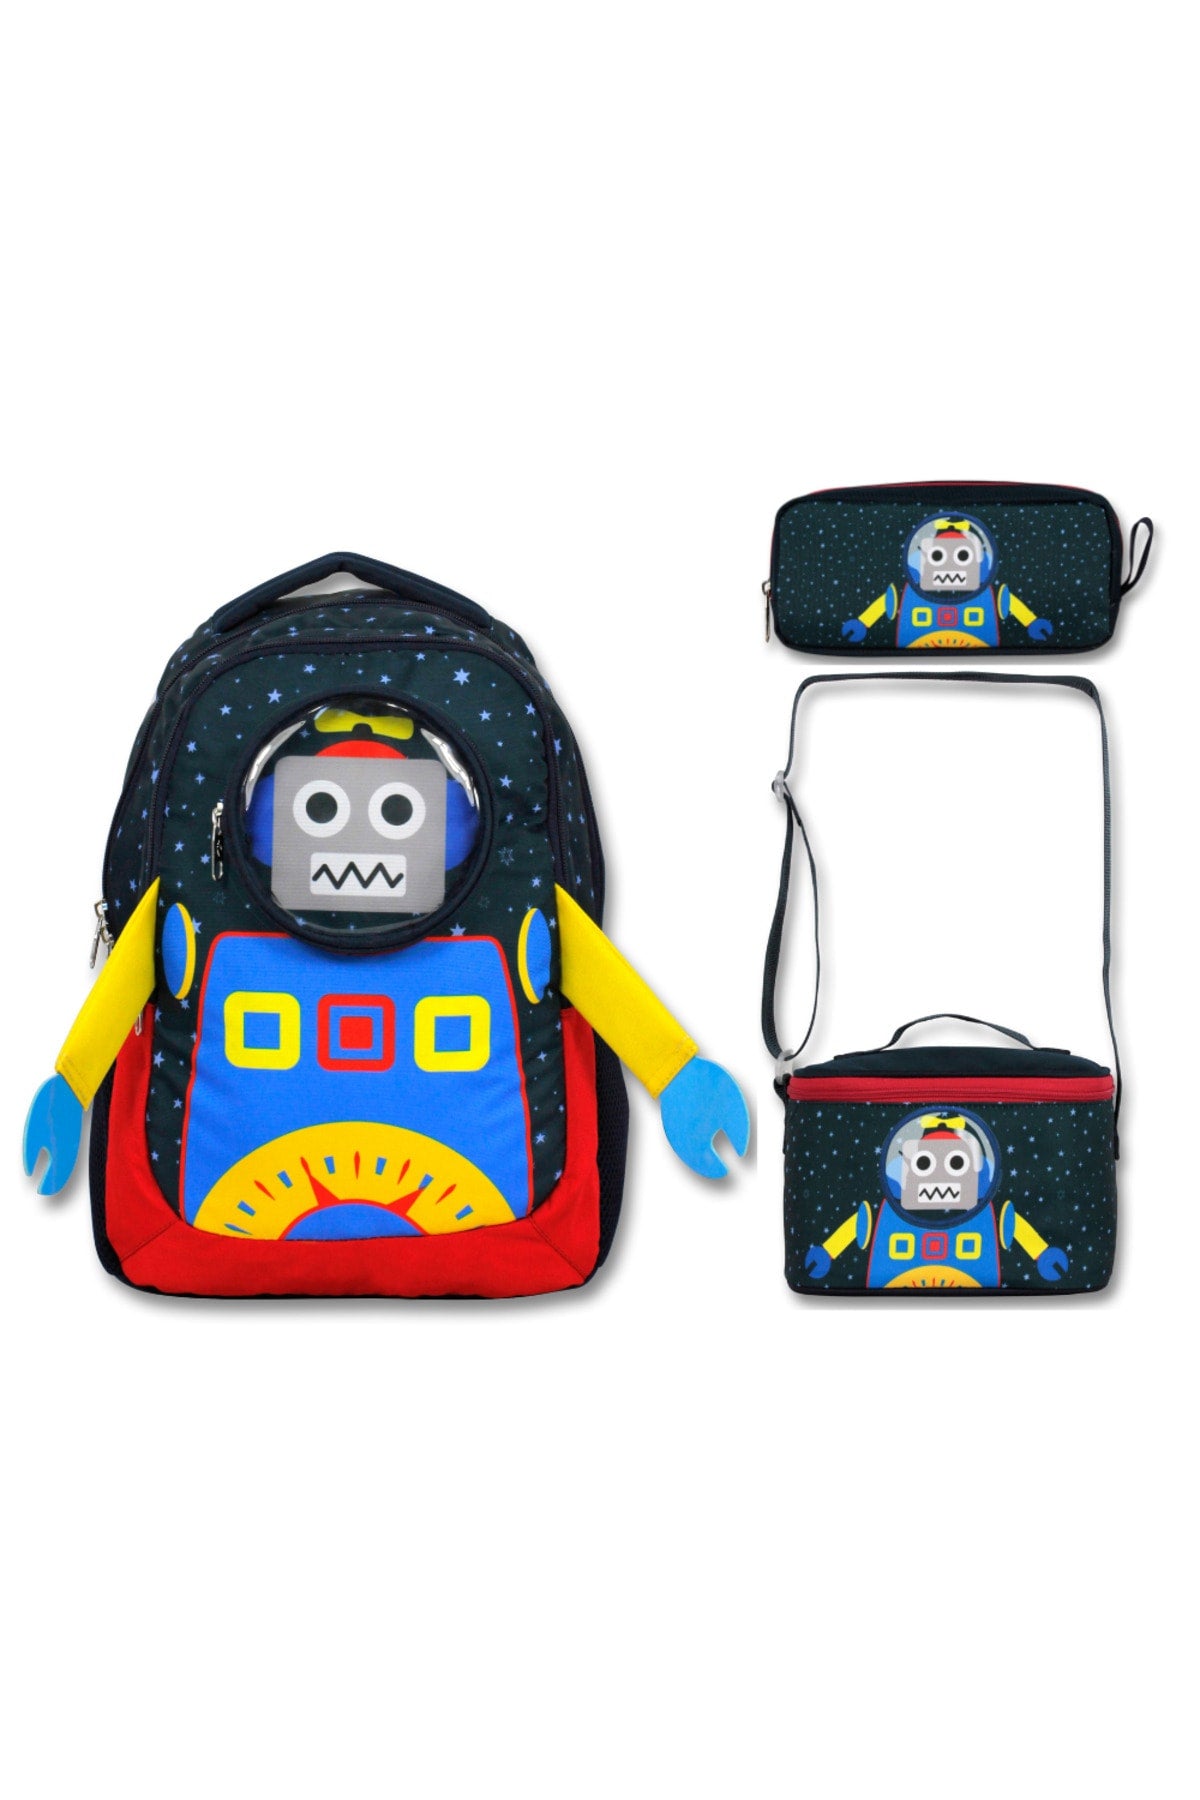 -Umit Bag Licensed Robot School Backpack -Nutrition And Pencil Bag Set